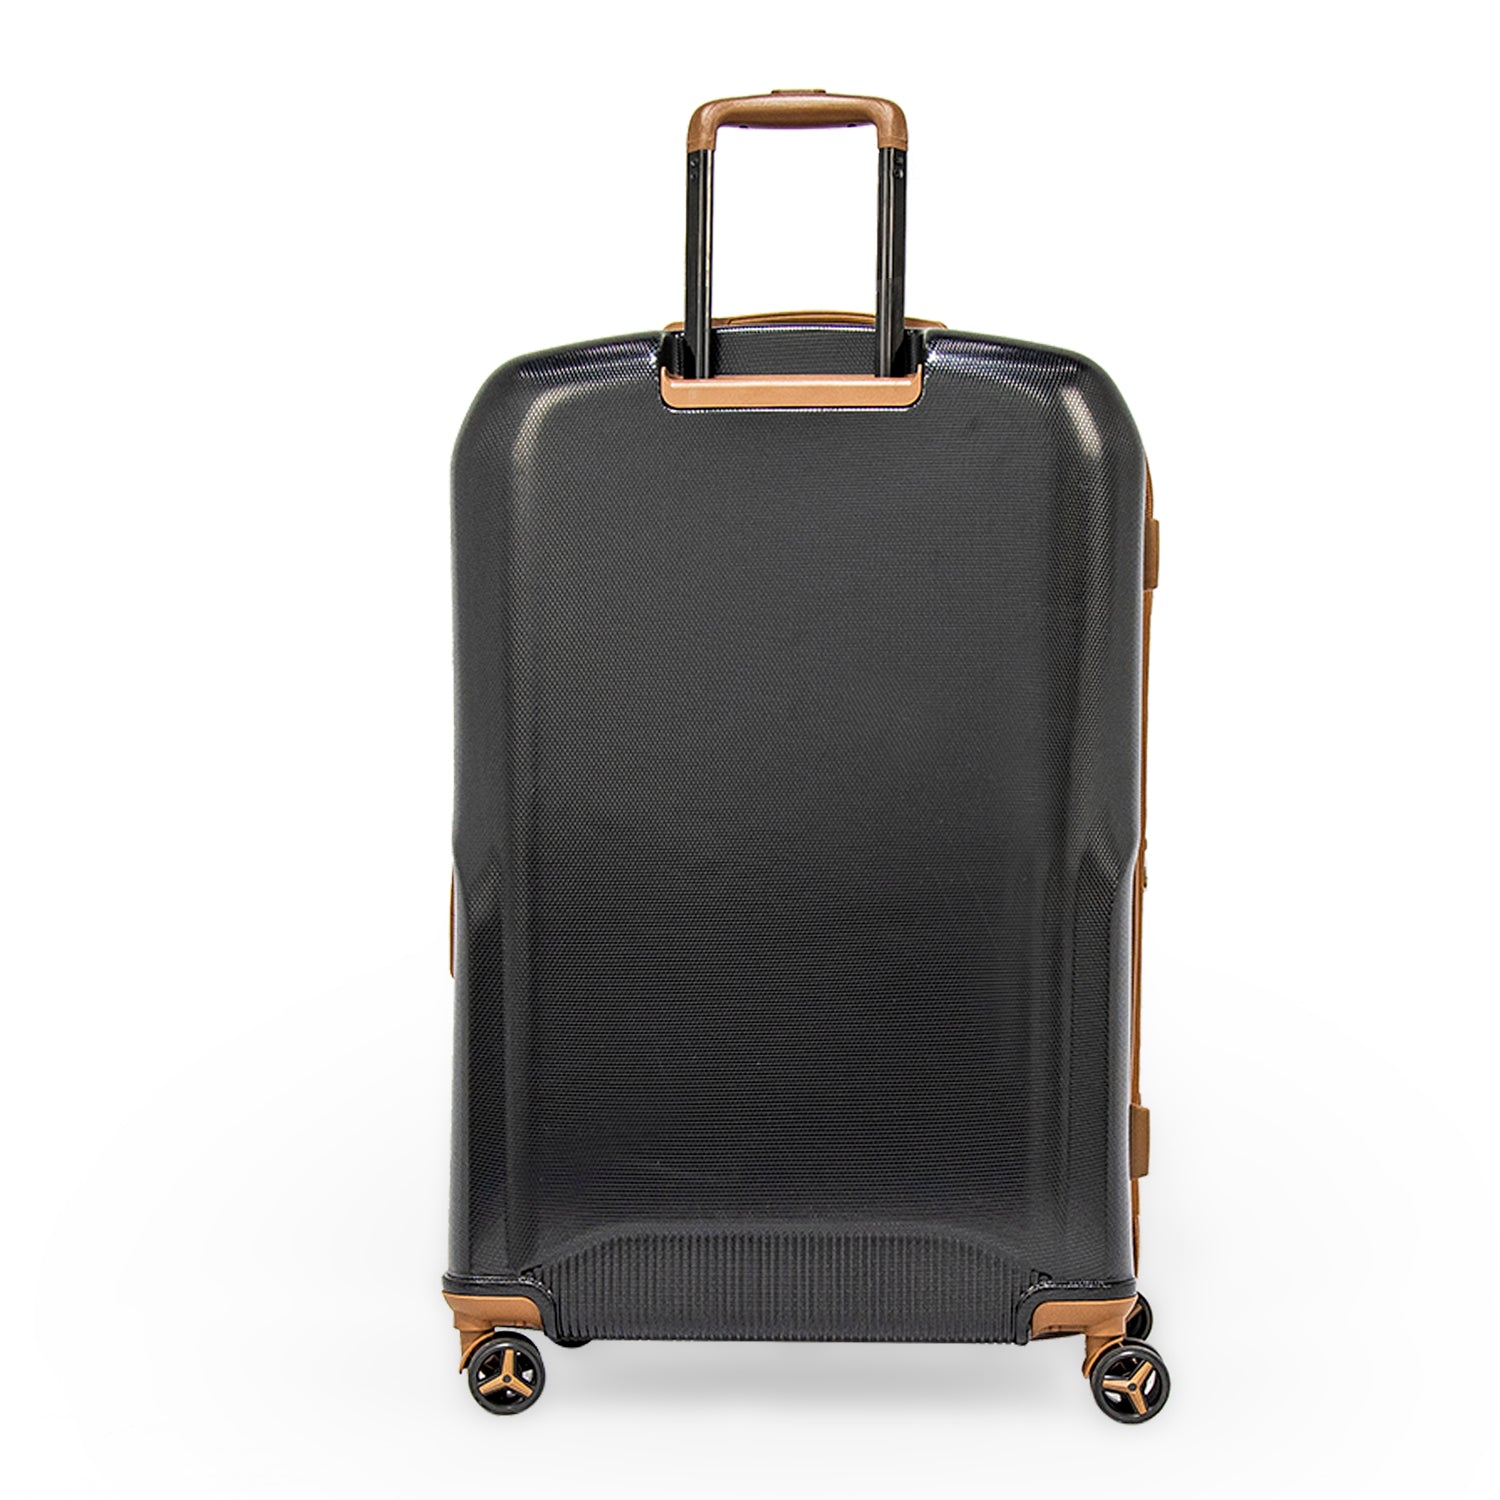 Sonada Upright Luggage Expandable Hardside Suitcase Check In Black